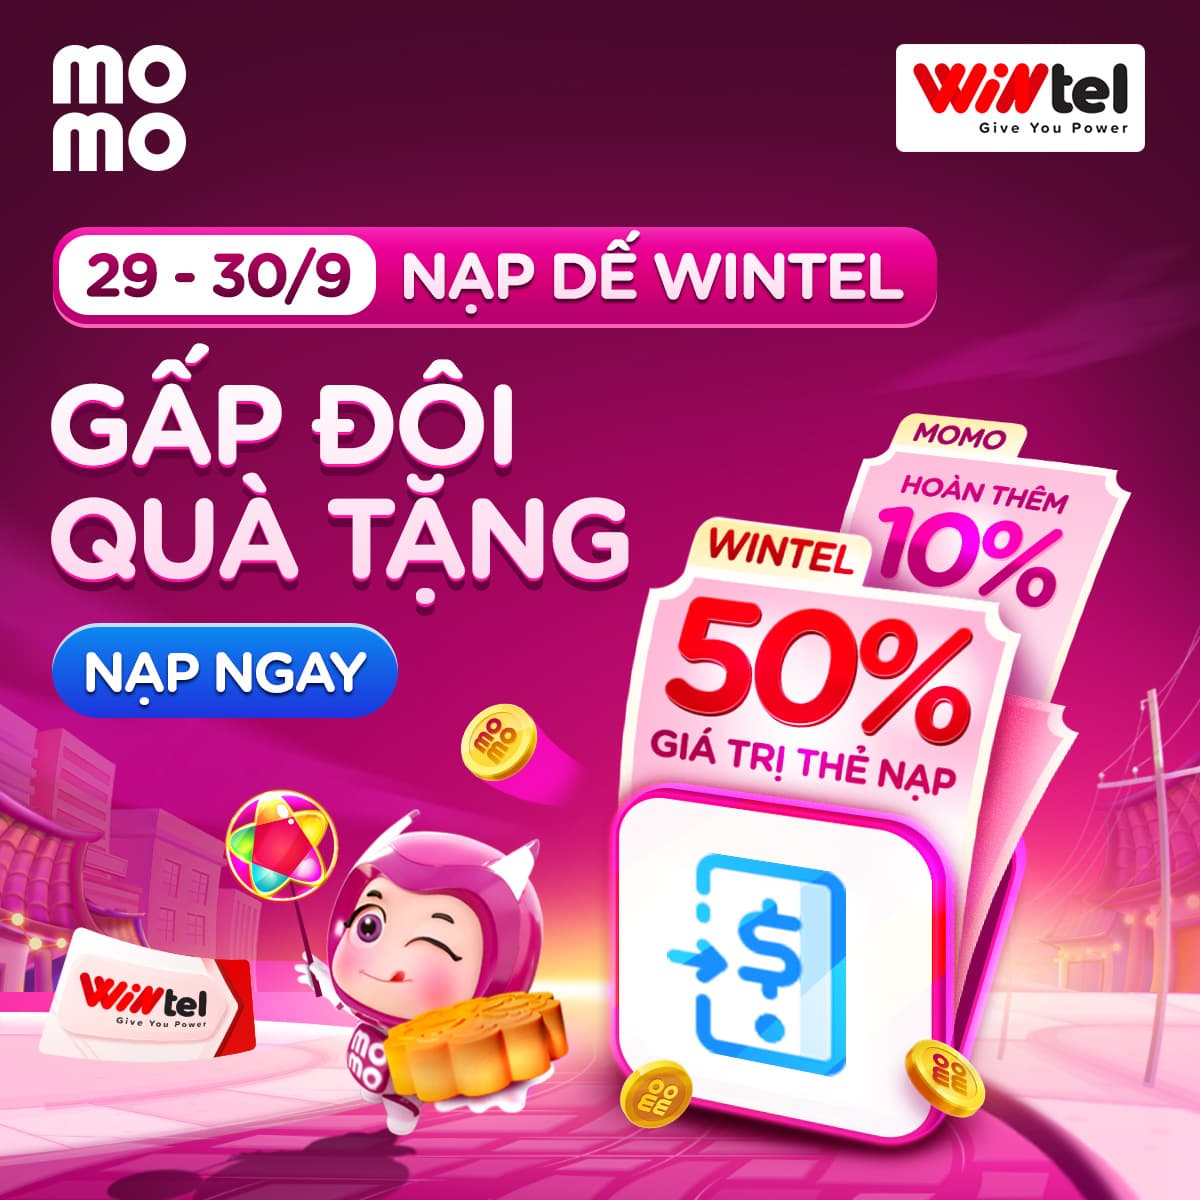 Nạp điện thoại Wintel - Rinh thêm đến 50% mệnh giá thẻ và hoàn tiền 10% từ MoMo